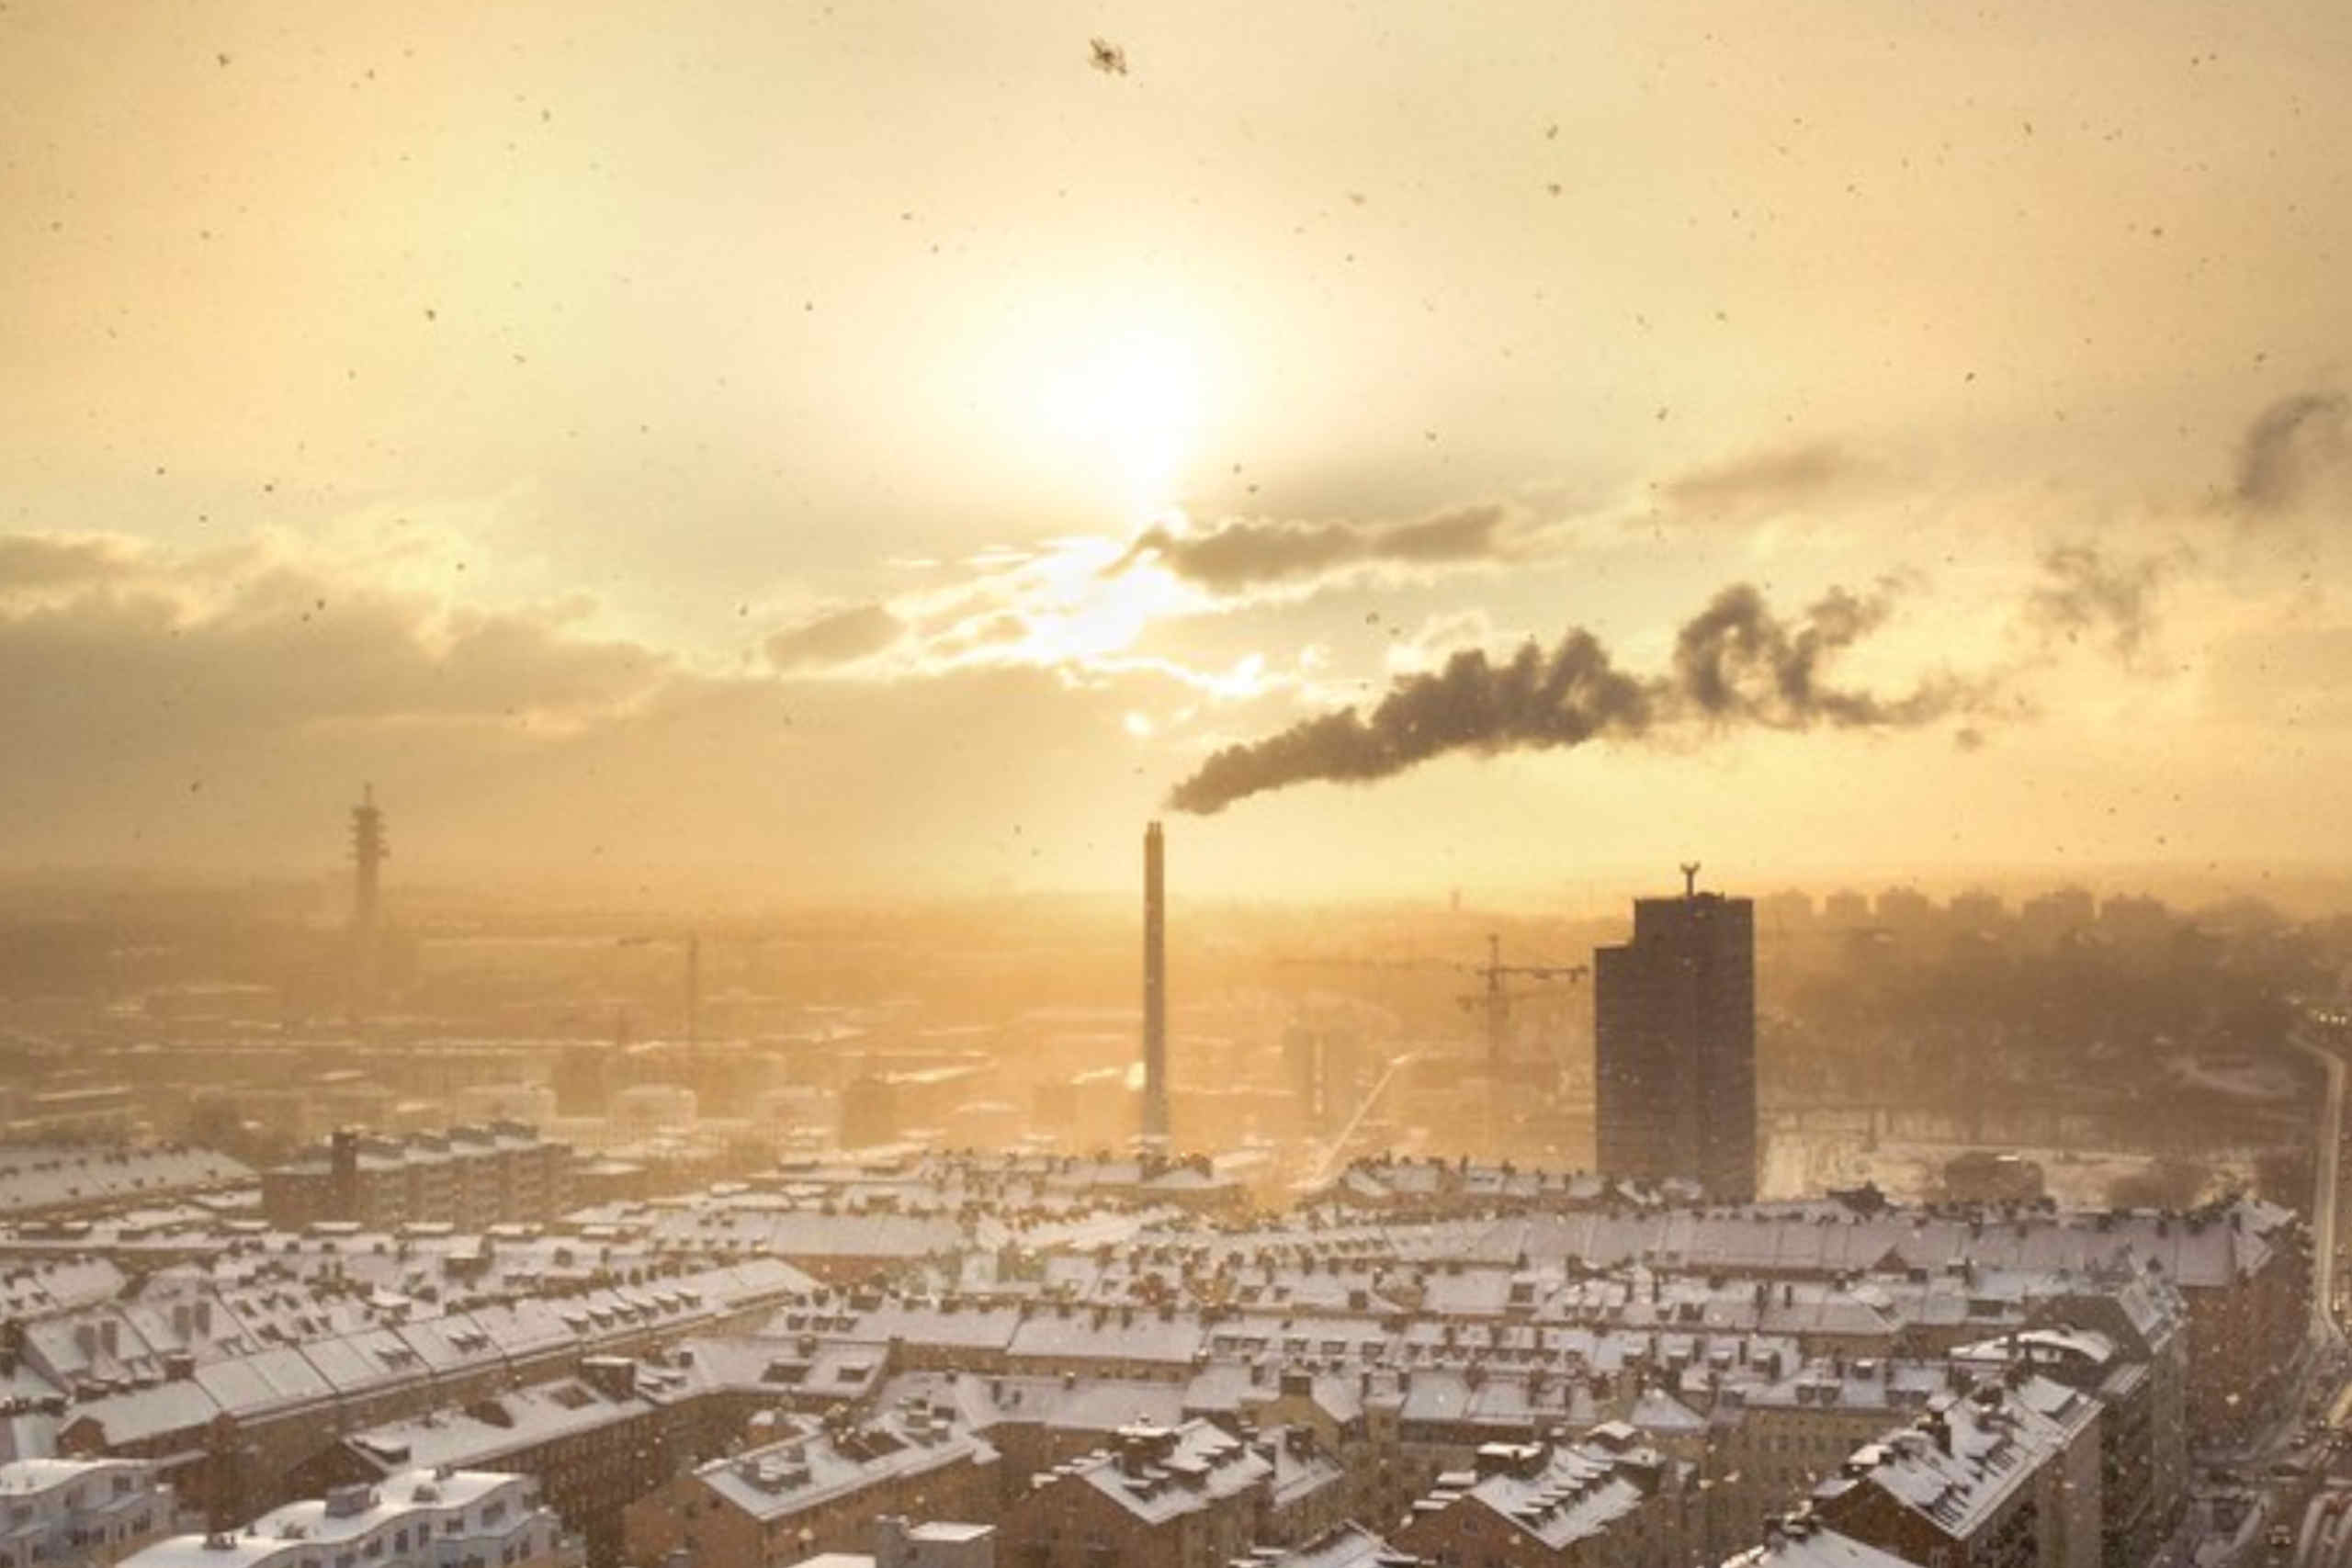 Gases poluentes para a atmosfera provenientes de uma área industrial